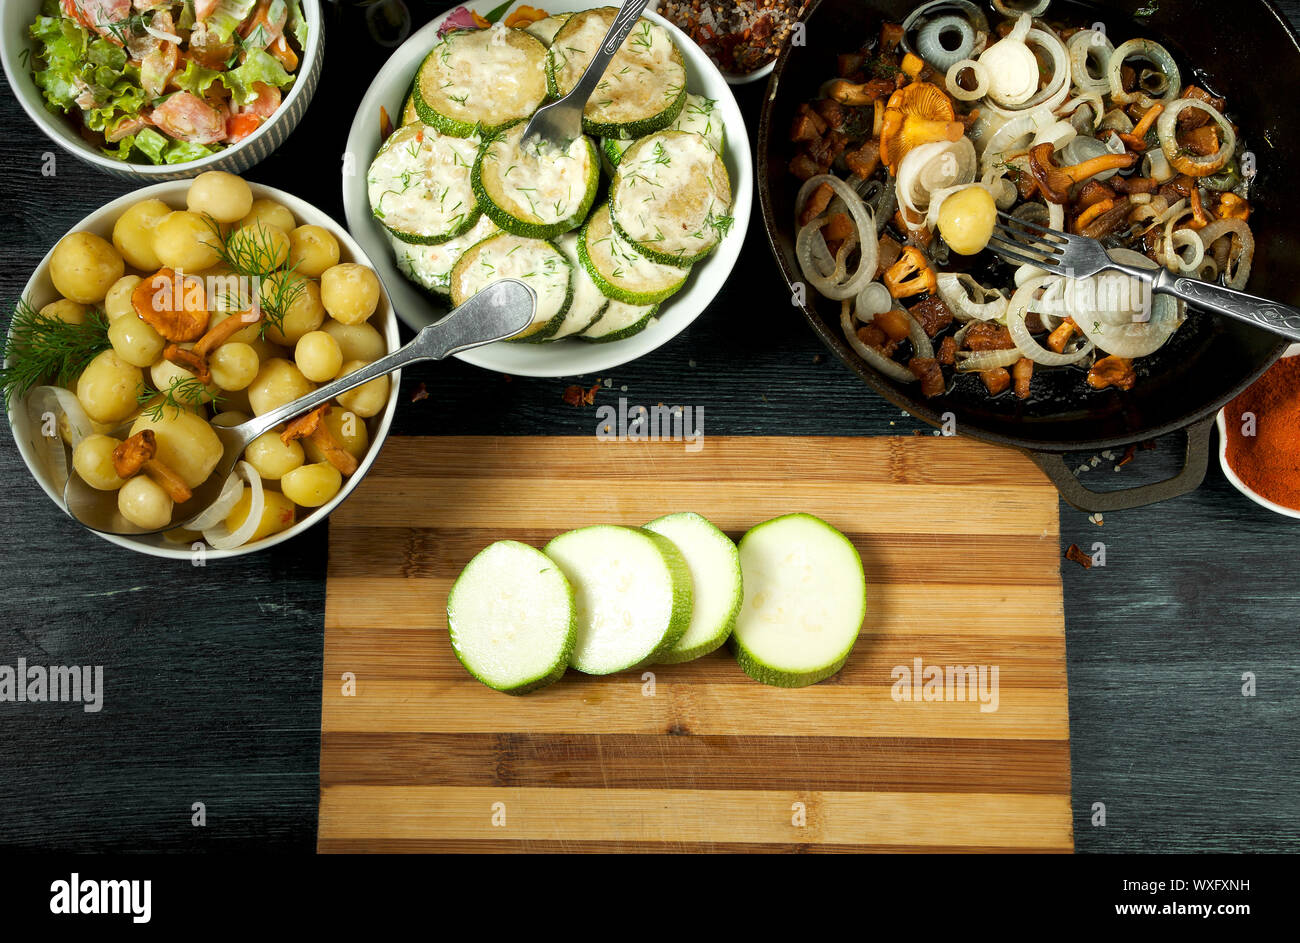 Gemüse auf dem Hintergrund. Gebratene zucchini Sauce in einen Teller. Junge gekochte Kartoffeln mit Dill in eine Schüssel geben. Gebratene Pfifferlinge Brei Stockfoto